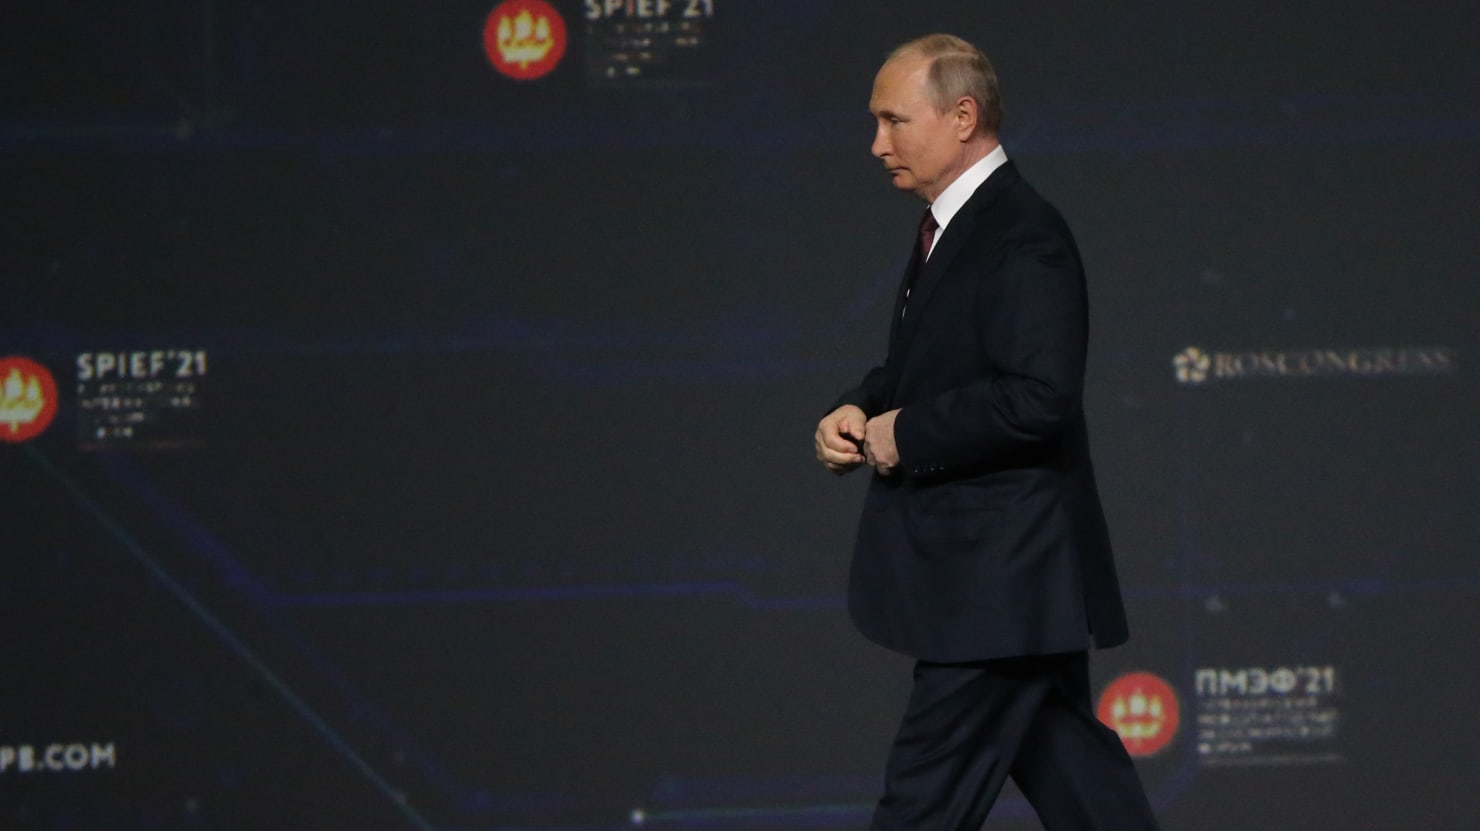 O Fórum Econômico “Russian Davos” de Vladimir Putin em São Petersburgo é de fato uma grande e triste bagunça